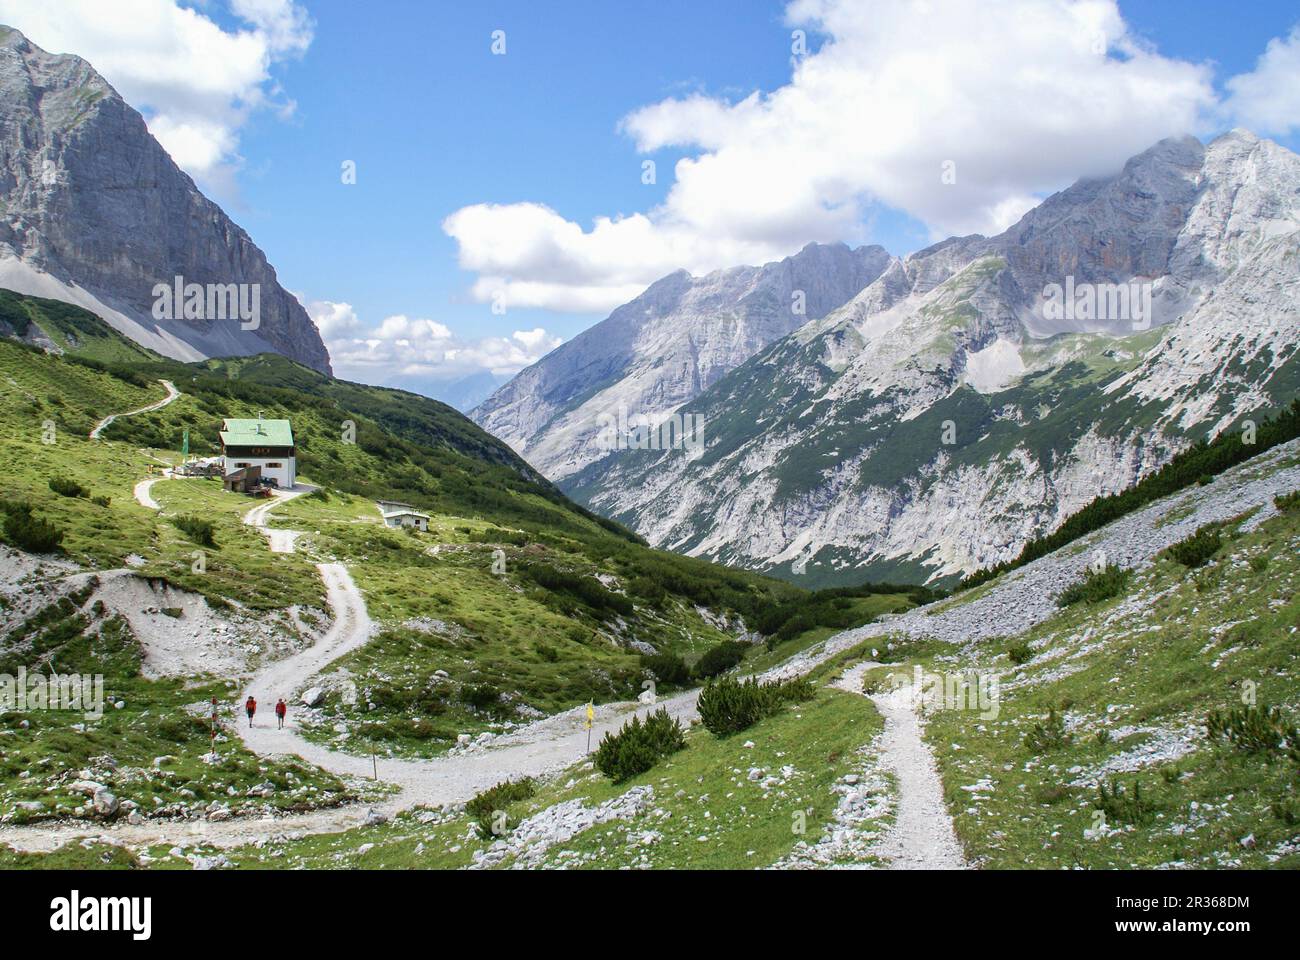 Pfeishuette, Tyrol, Austria, Karwendel Mountains Stock Photo